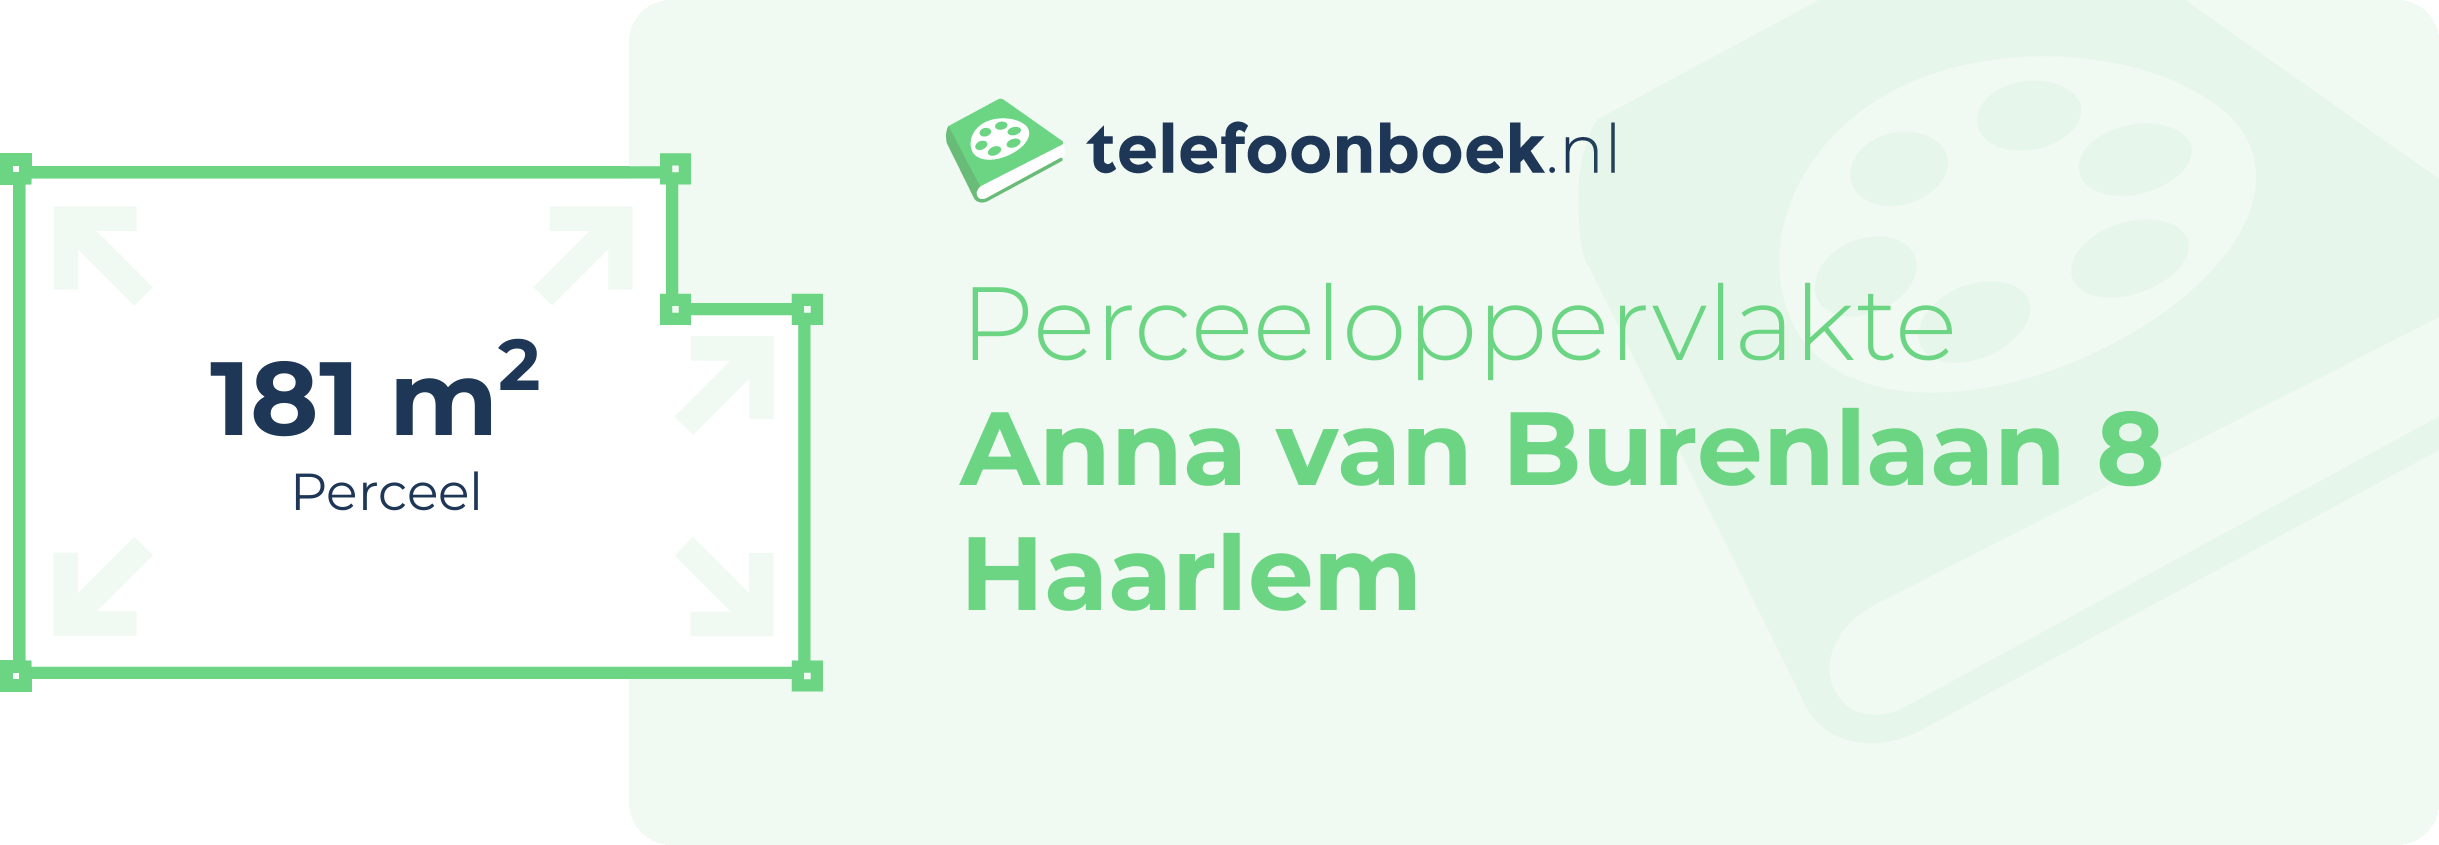 Perceeloppervlakte Anna Van Burenlaan 8 Haarlem